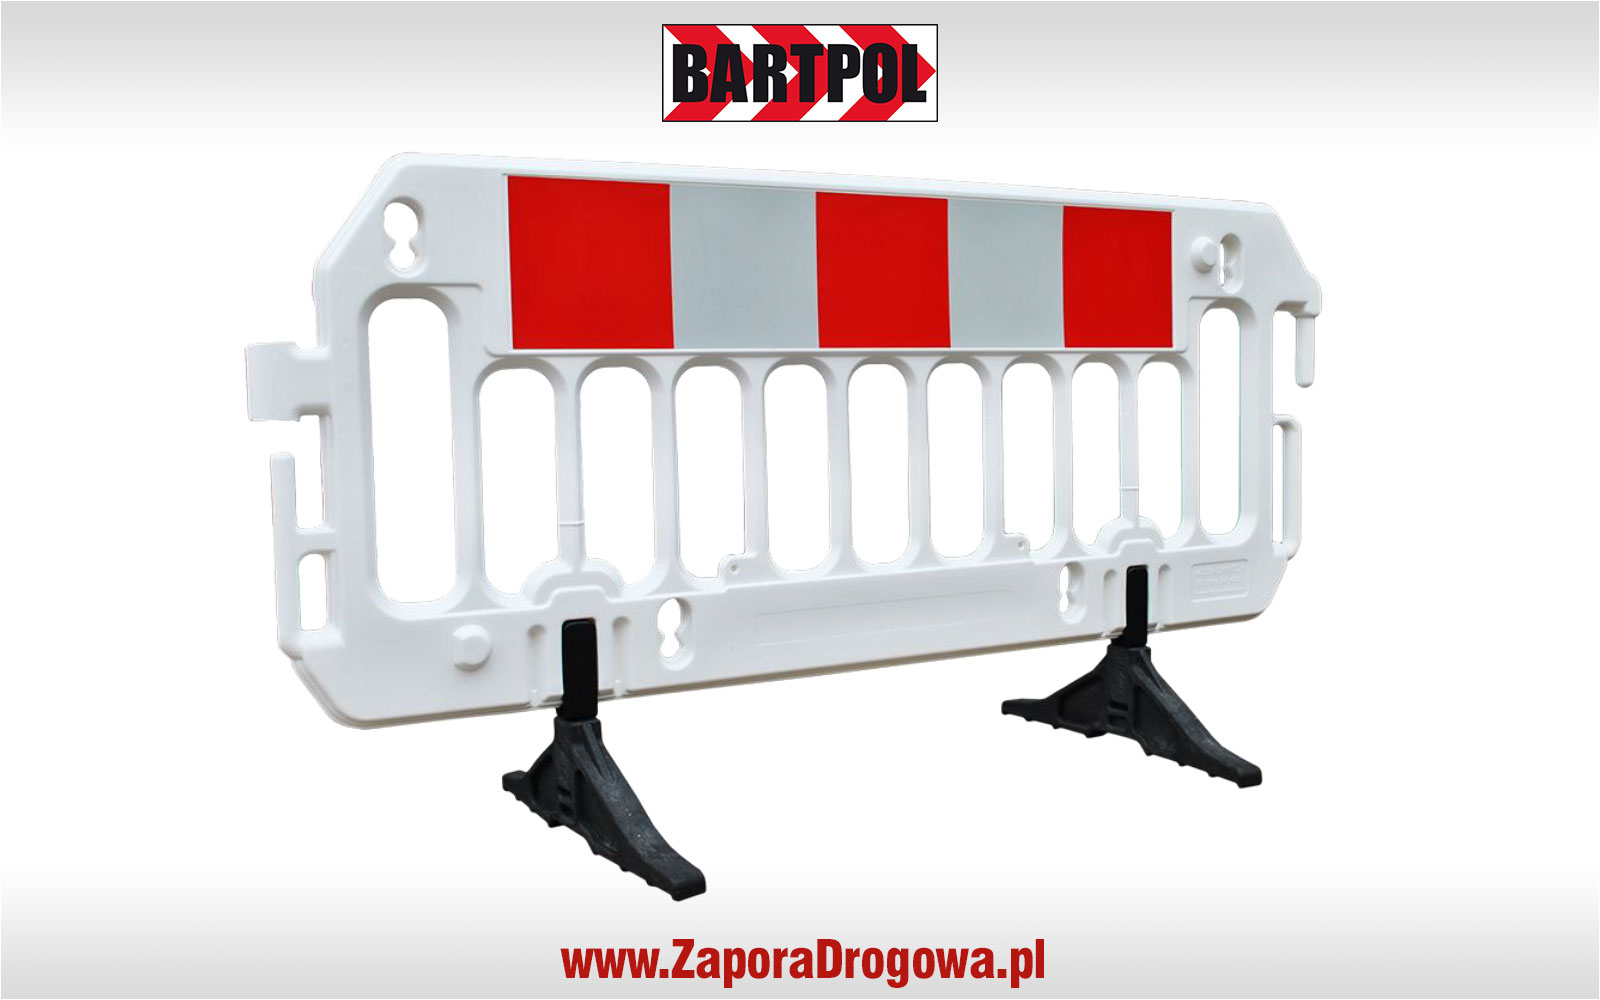 BARTPOL - www.ZaporaDrogowa.pl